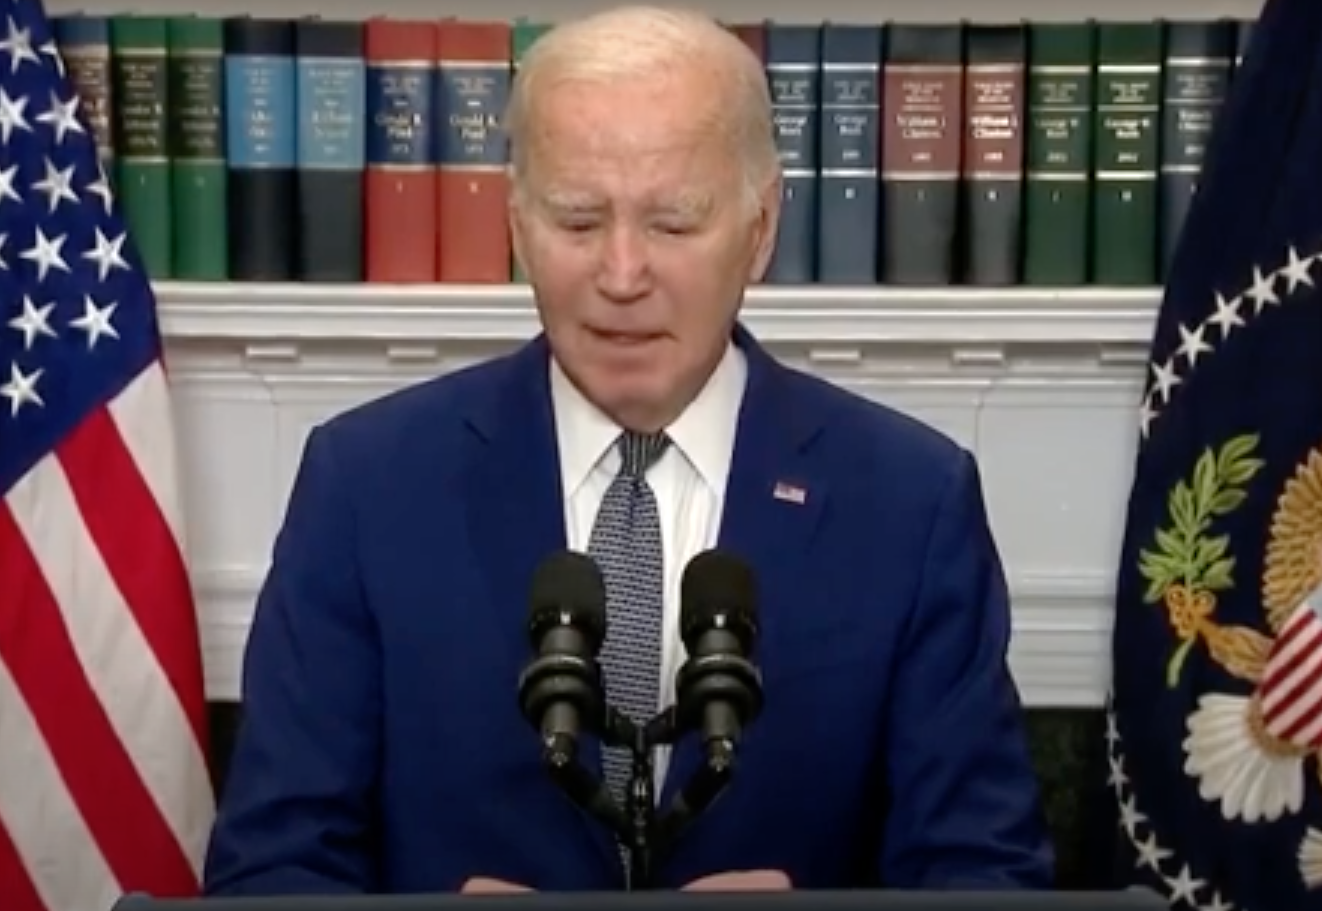 WATCH: Biden Freezes During Comments on Shutdown